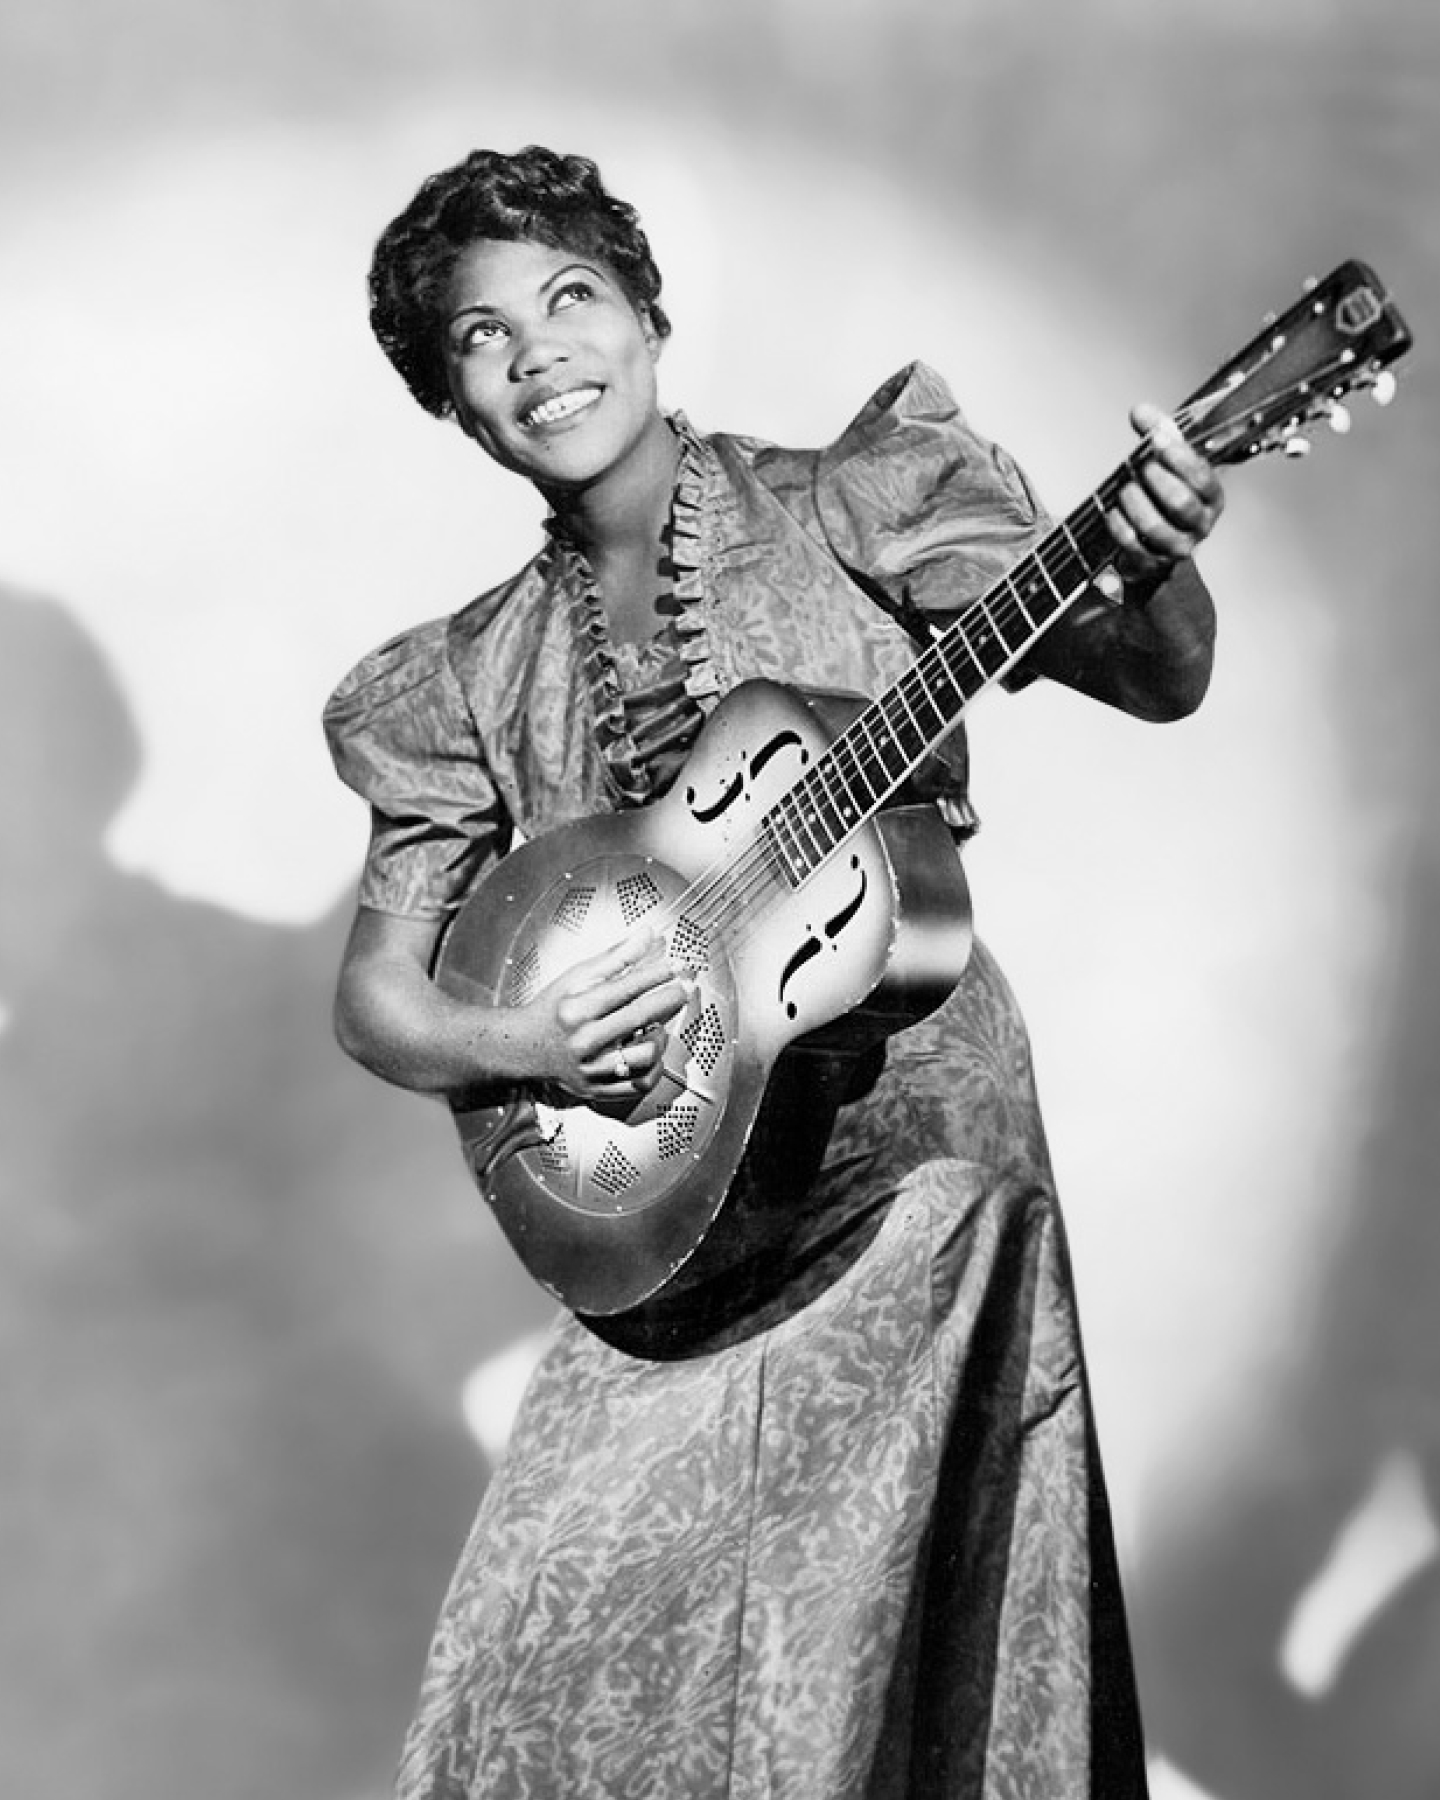 러플 블라우스와 패턴 원피스를 입고 공명기 기타를 들고 웃고 있는 여성의 흑백 사진입니다.